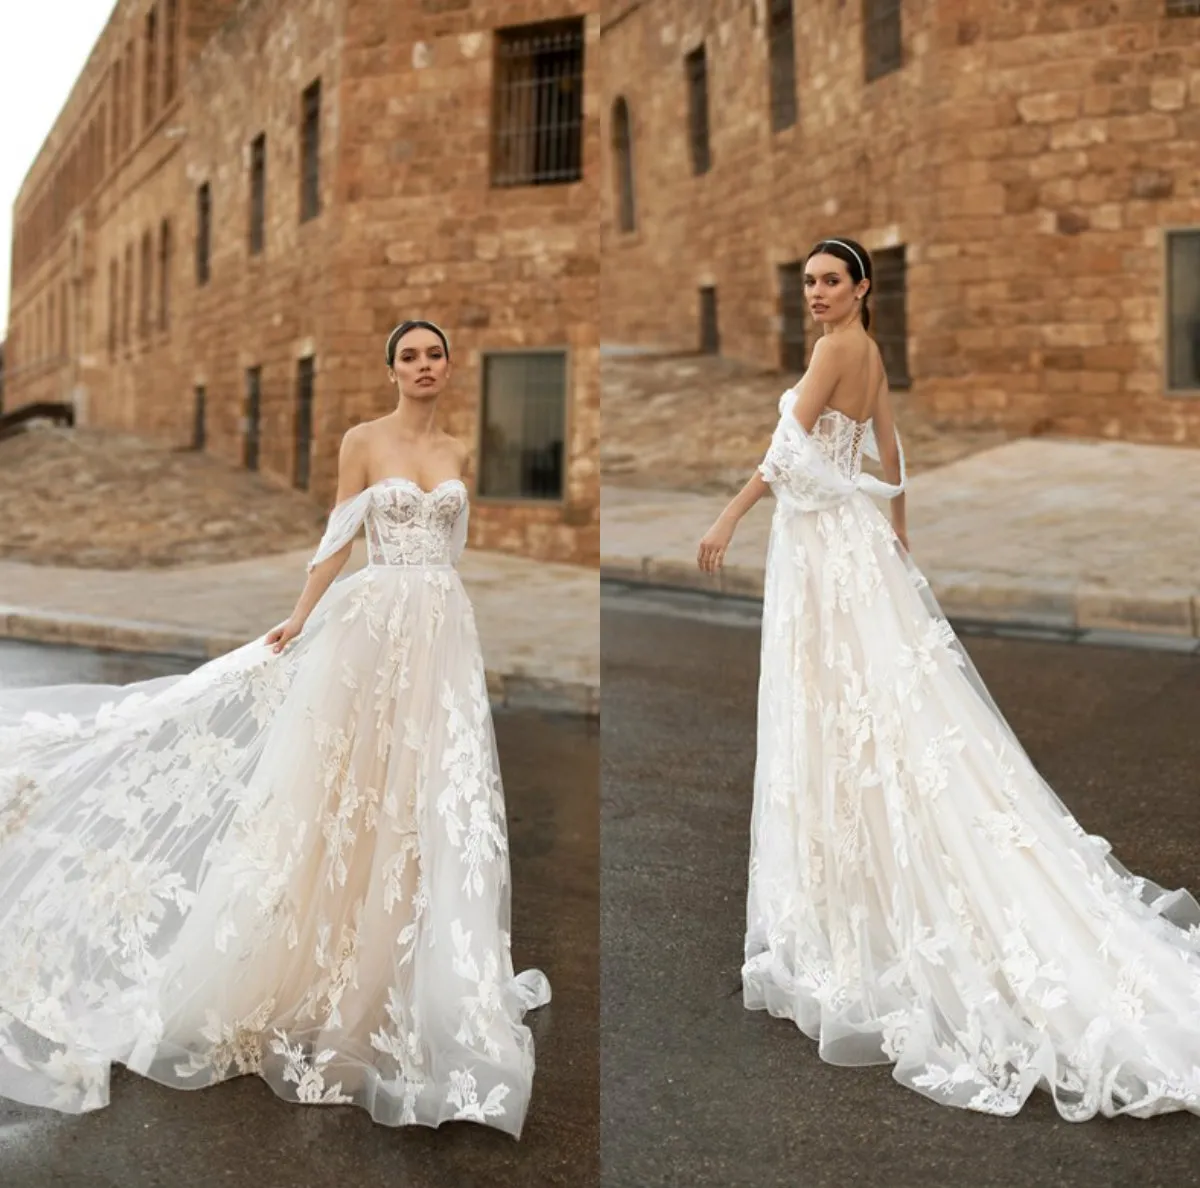 2020 Floral A-ligne robes de mariée sur mesure chérie appliqué perlé dentelle tribunal train robe de mariée dos nu volants plage robe de mariée